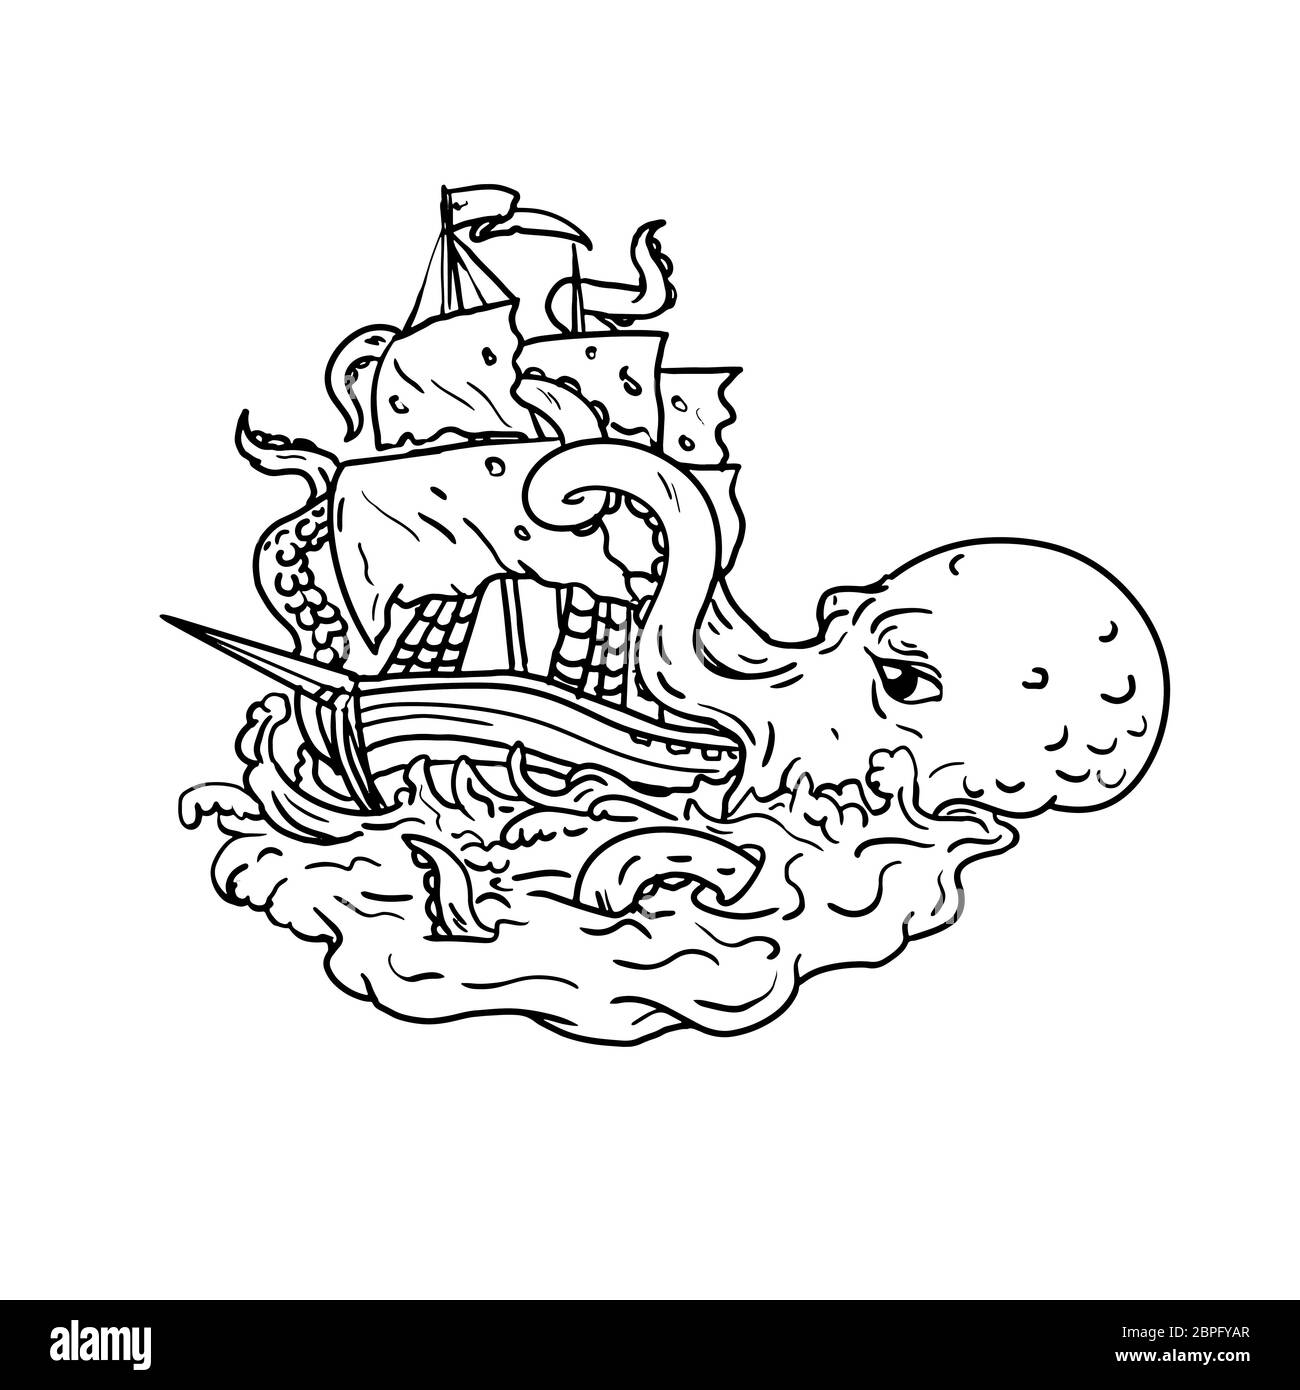 Doodle art Illustration eines Kraken, einem legendären Tintenfischfänger - wie die riesigen seemonster angreifen ein Segelschiff mit seinen Tentakeln am Meer mit turbulenten Stockfoto